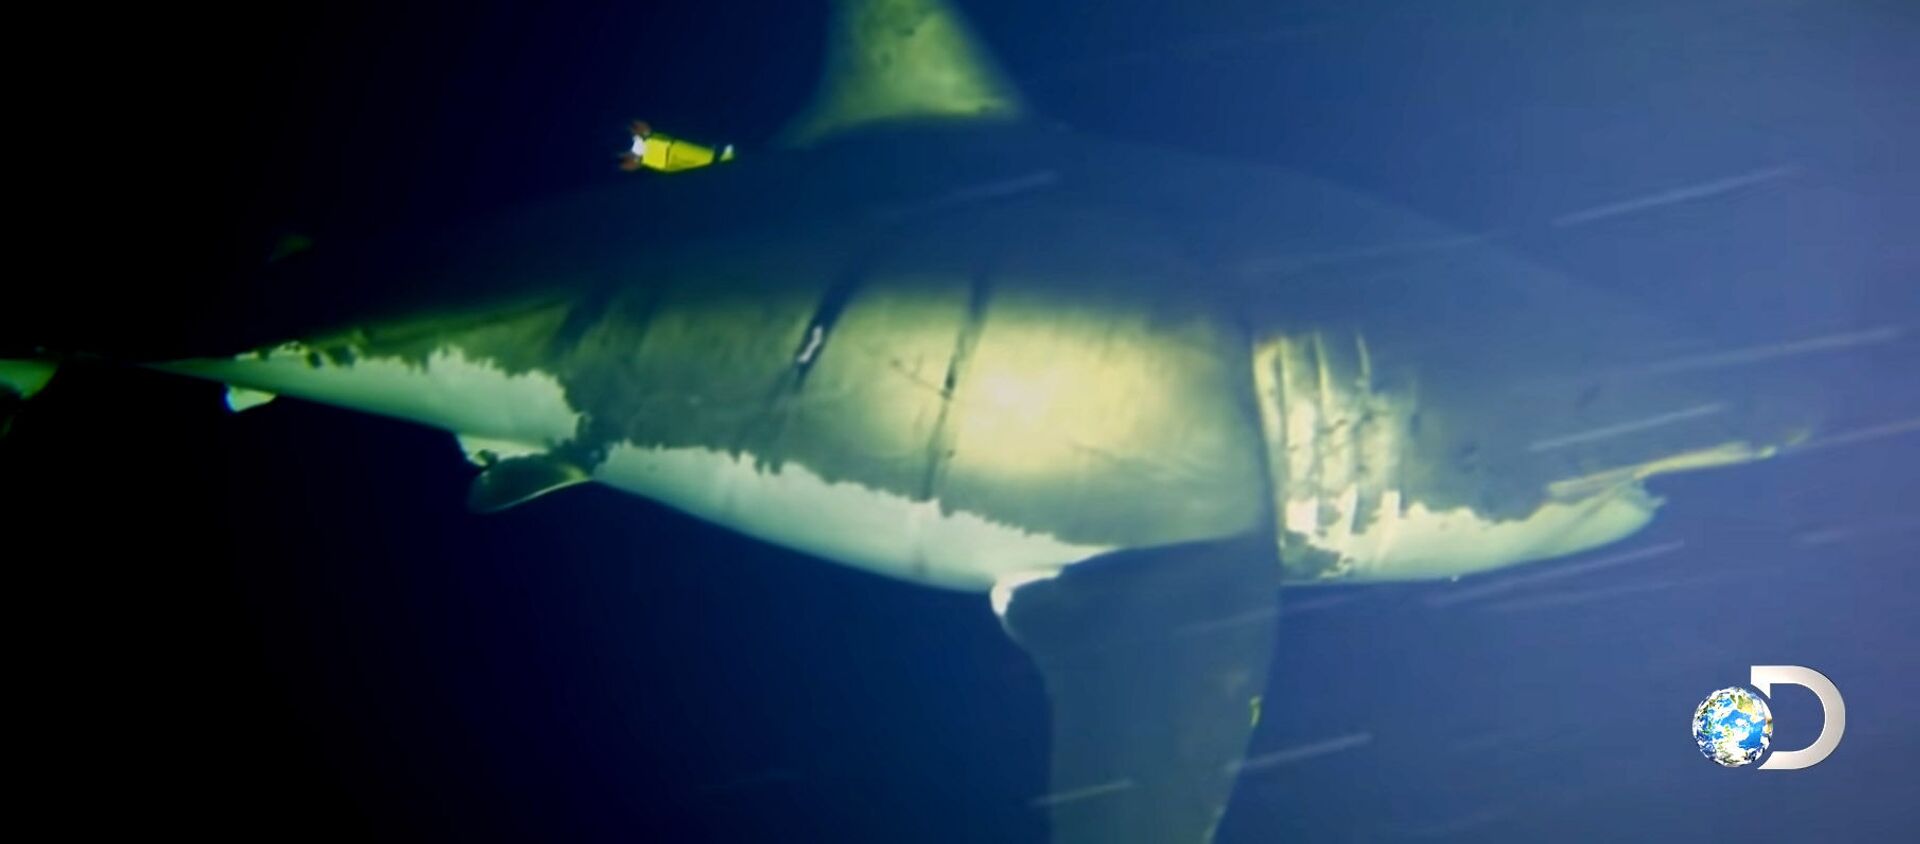 Сүзүп бара жатып уктаган акуланын видеосу - Sputnik Кыргызстан, 1920, 20.06.2021